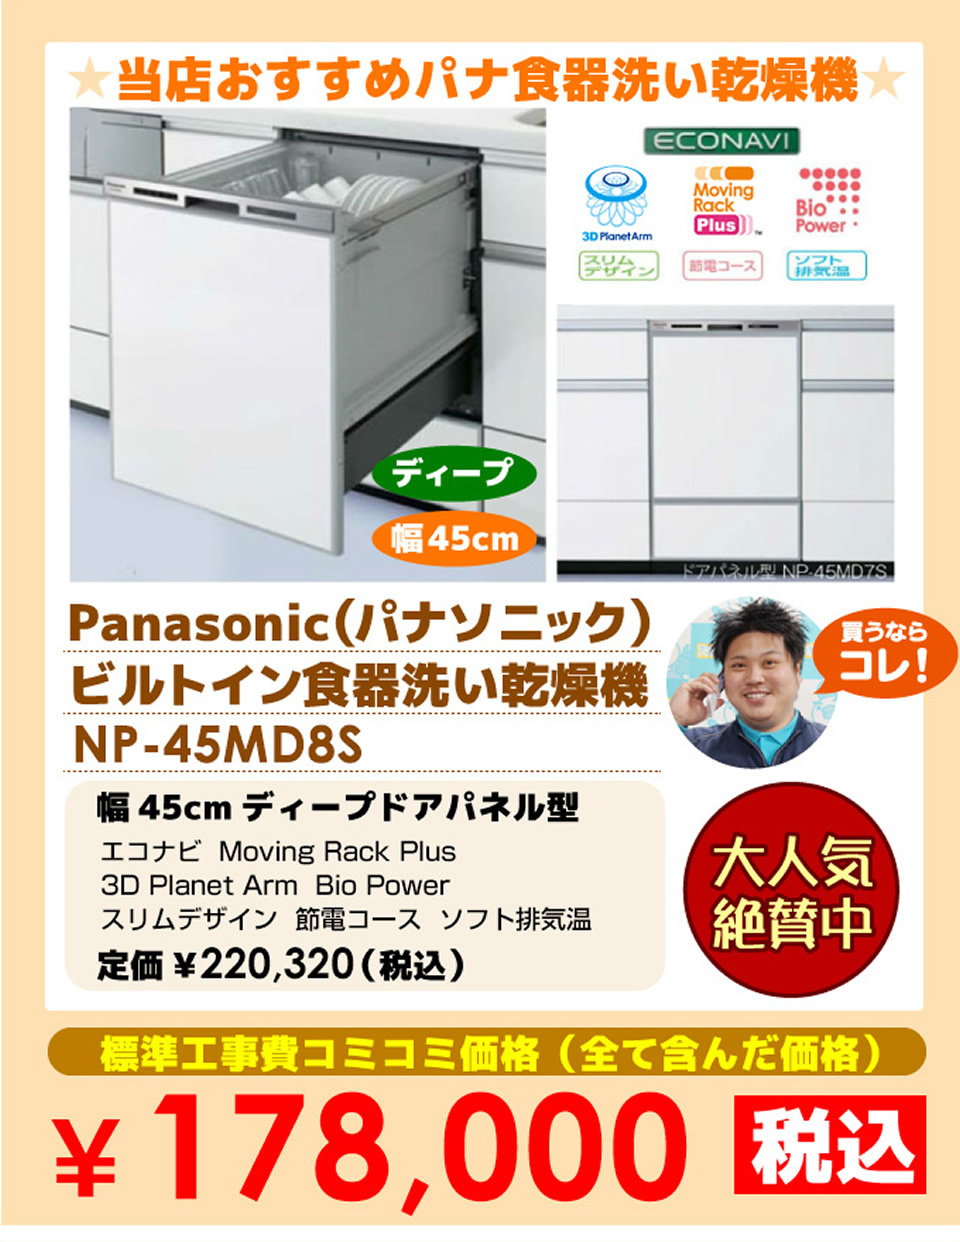 当店おすすめパナソニック食器洗い機 価格 Panasonic（パナソニック）の食器洗い機